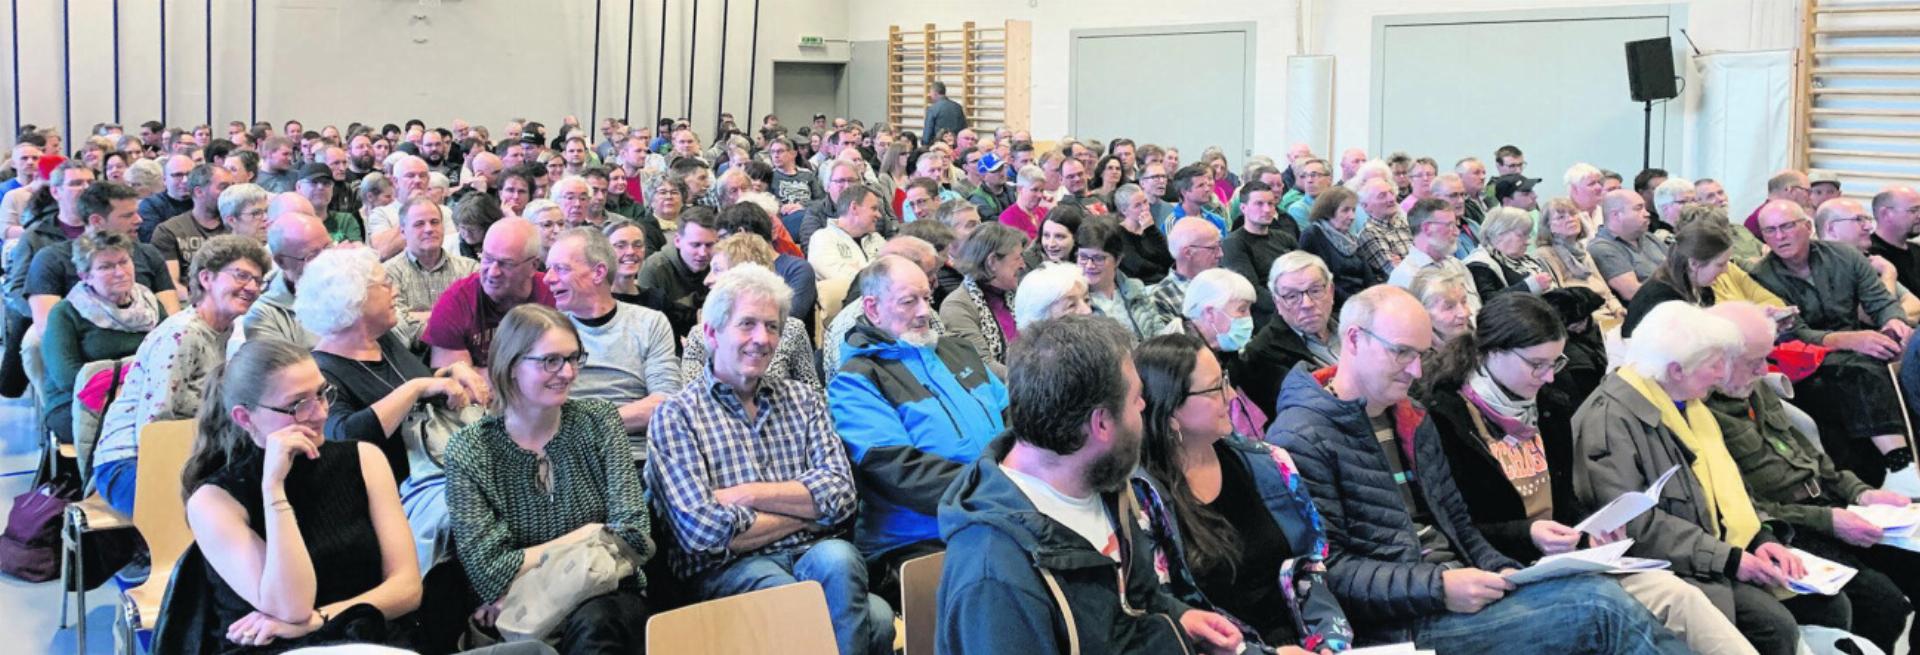 200 Stühle standen bereit, 53 weitere mussten herbeigeschafft werden, so gross war das Interesse an der Fusions-Gemeindeversammlung in Wölflinswil. Foto: Simone Rufli